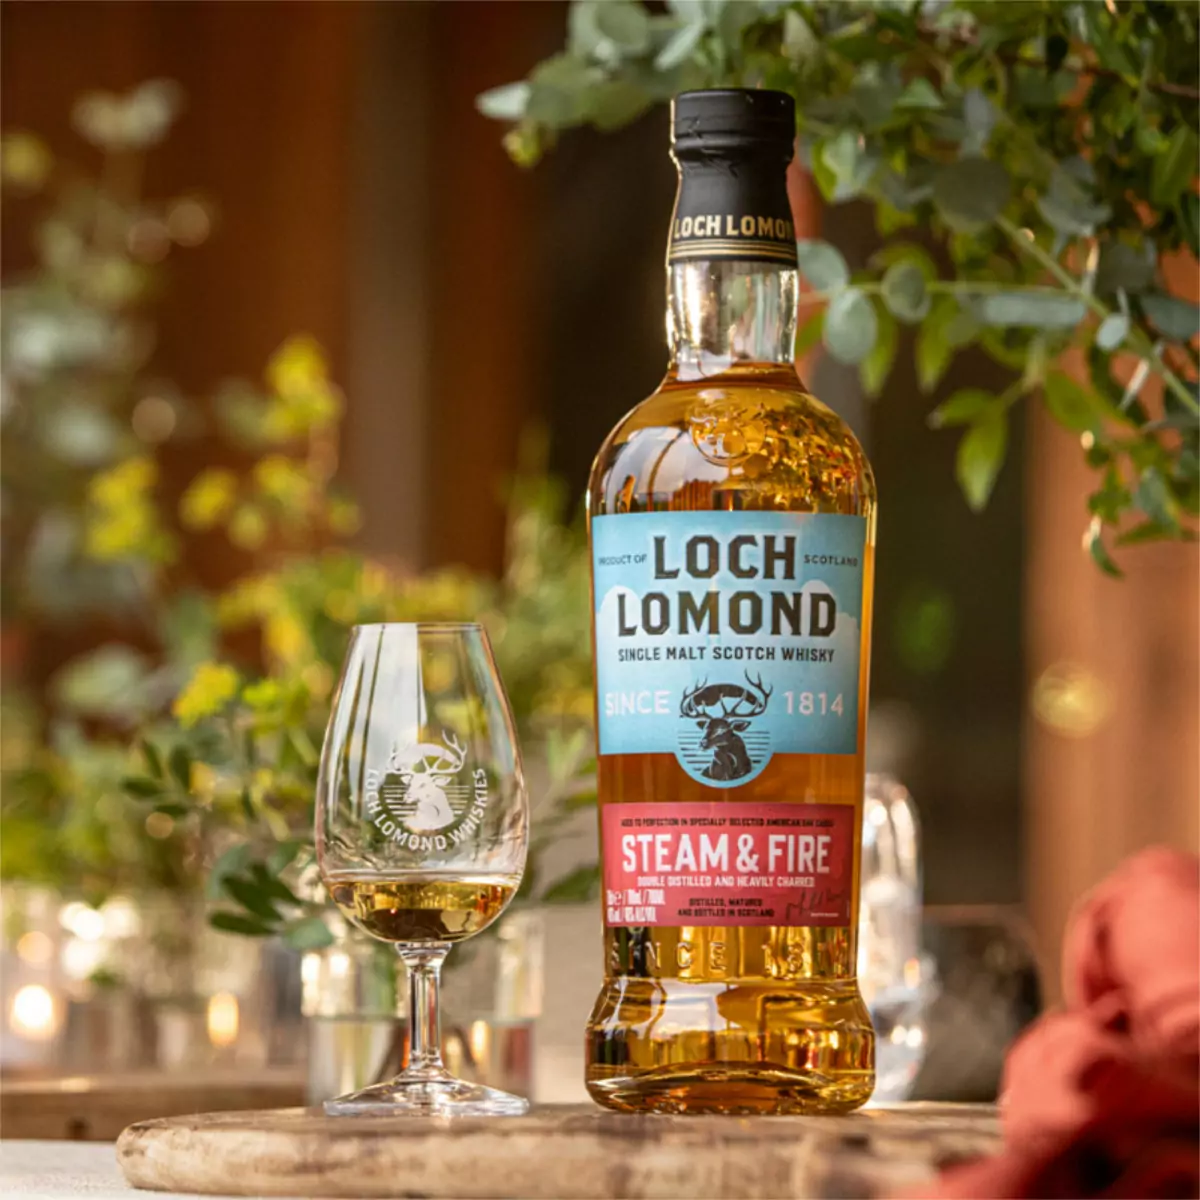 Loch Lomond Whiskies Introduces “Steam & Fire”